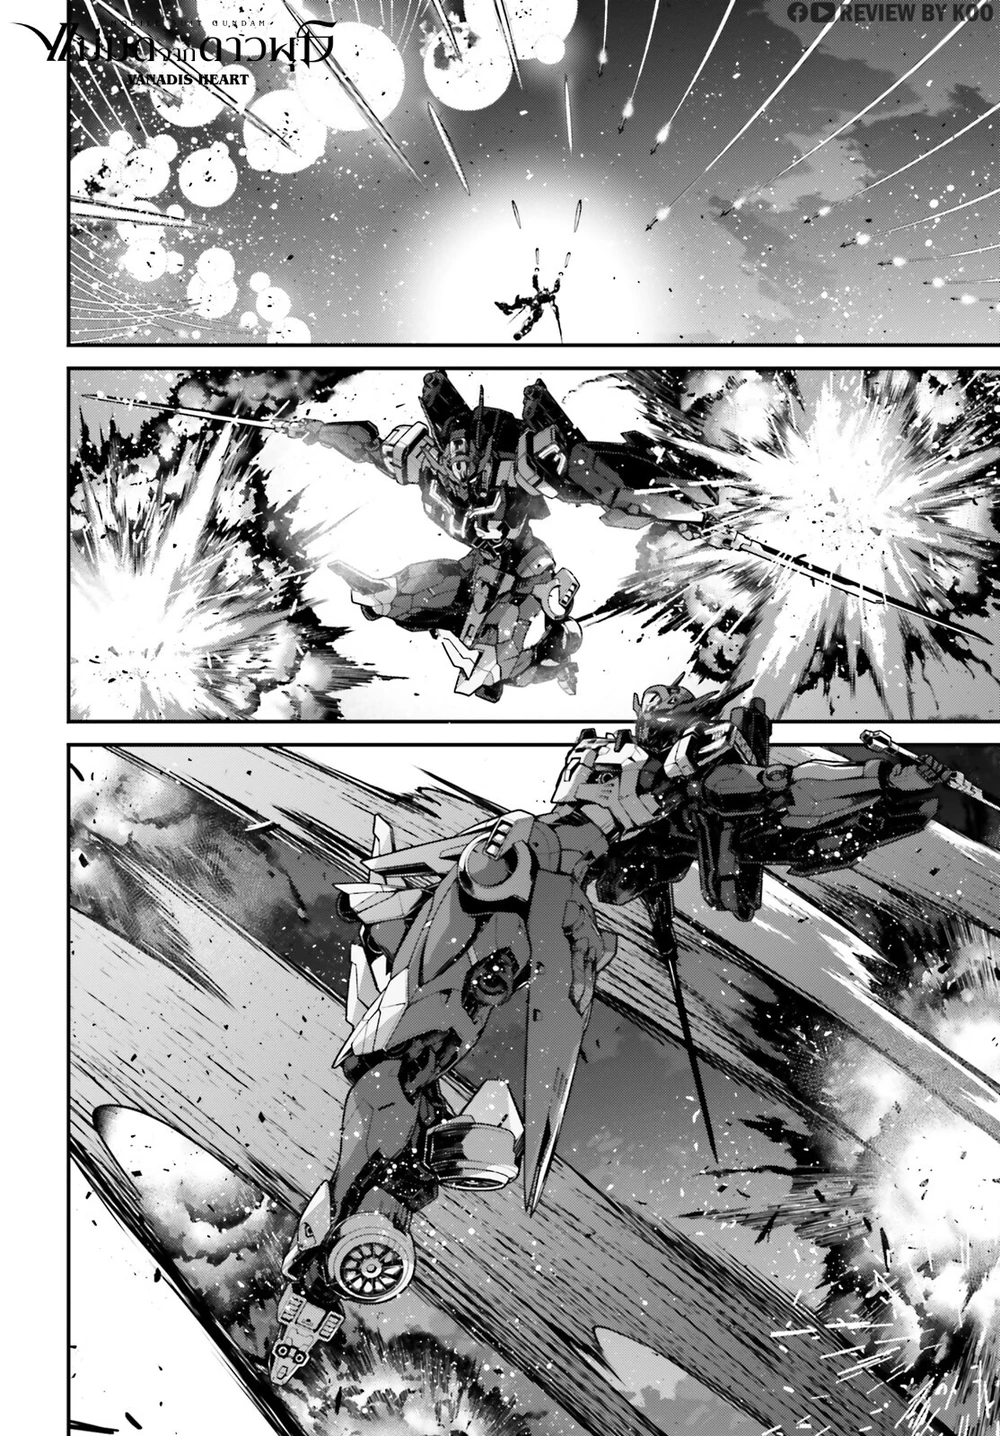 “Ilustración de un Gundam Anavatapta, un robot gigante de la serie Gundam, en una pose dinámica con un fondo de batalla espacial.”